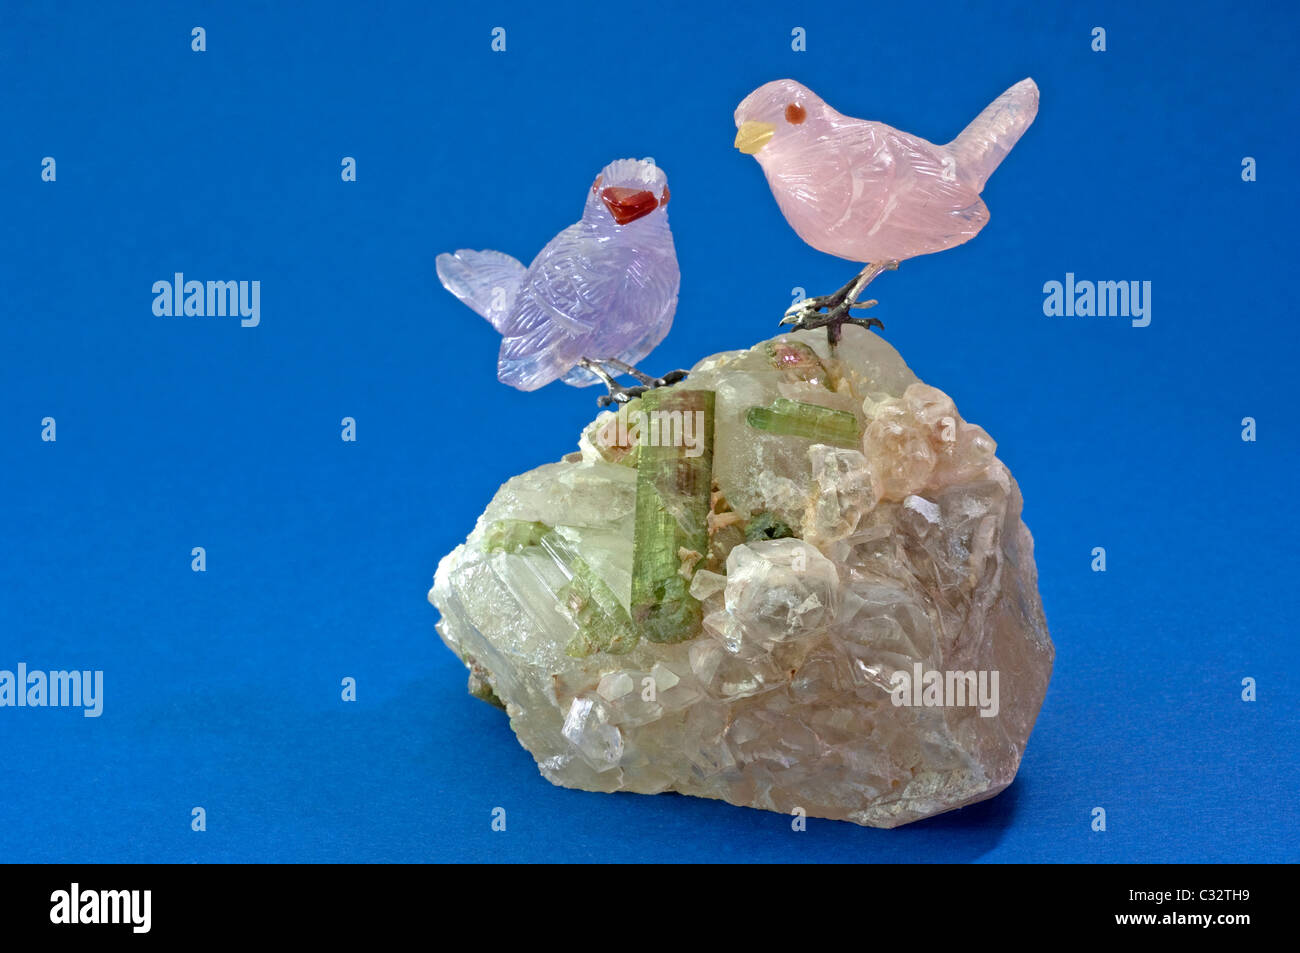 Spatzen gemacht auf einen Kristall mit Turmalin, Rosenquarz und Amethyst steht. Studio Bild vor einem blauen Hintergrund. Stockfoto